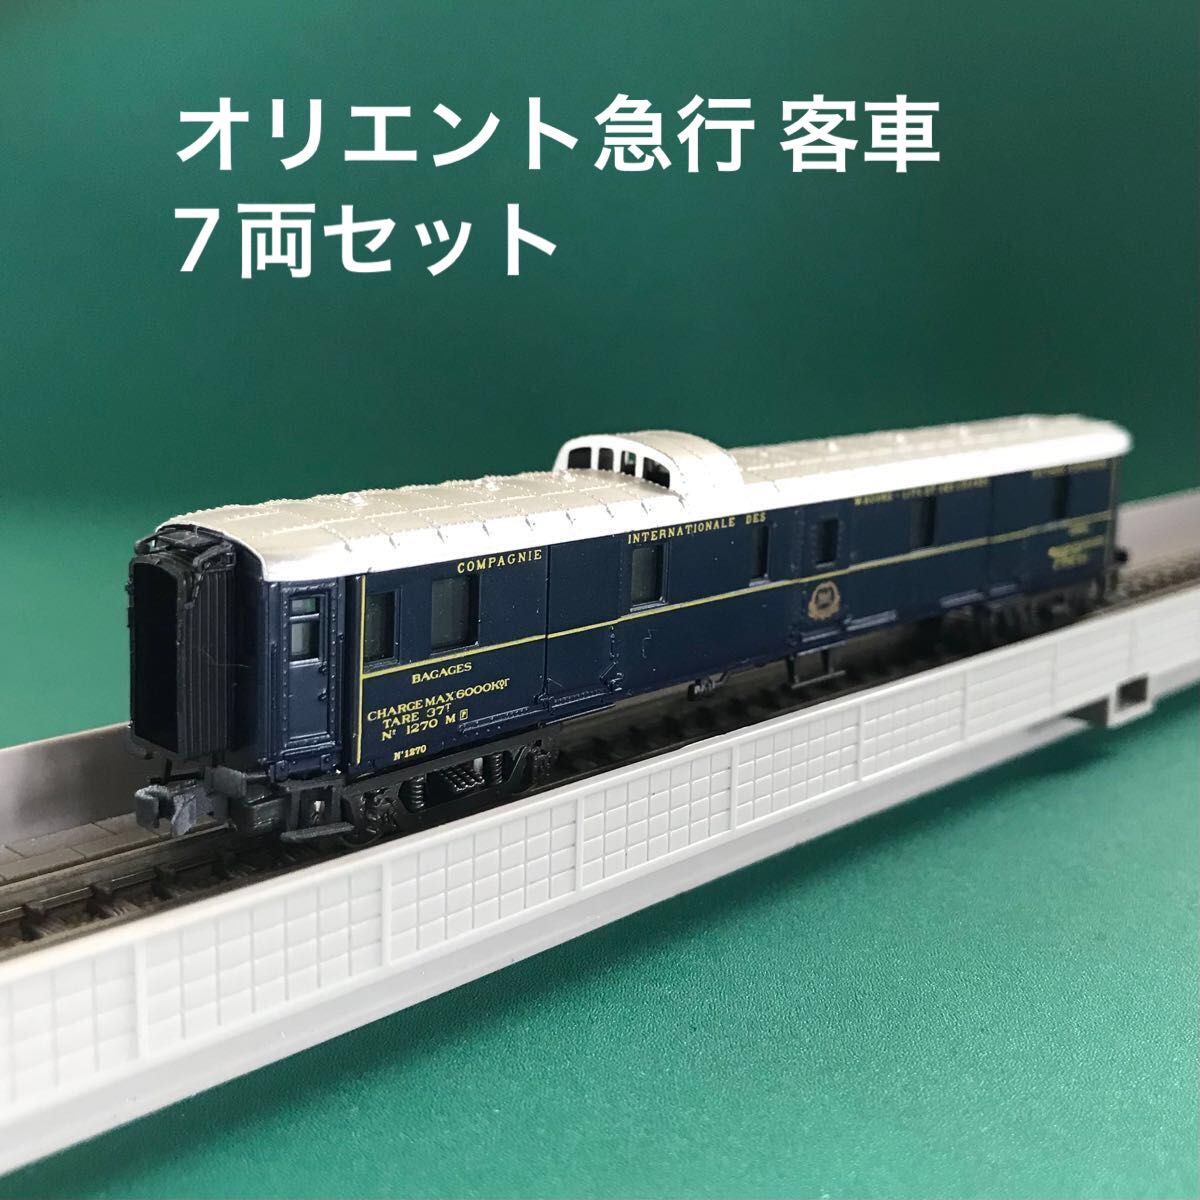 詳細不明 オリエント急行 HOゲージ 7両セット - 鉄道模型